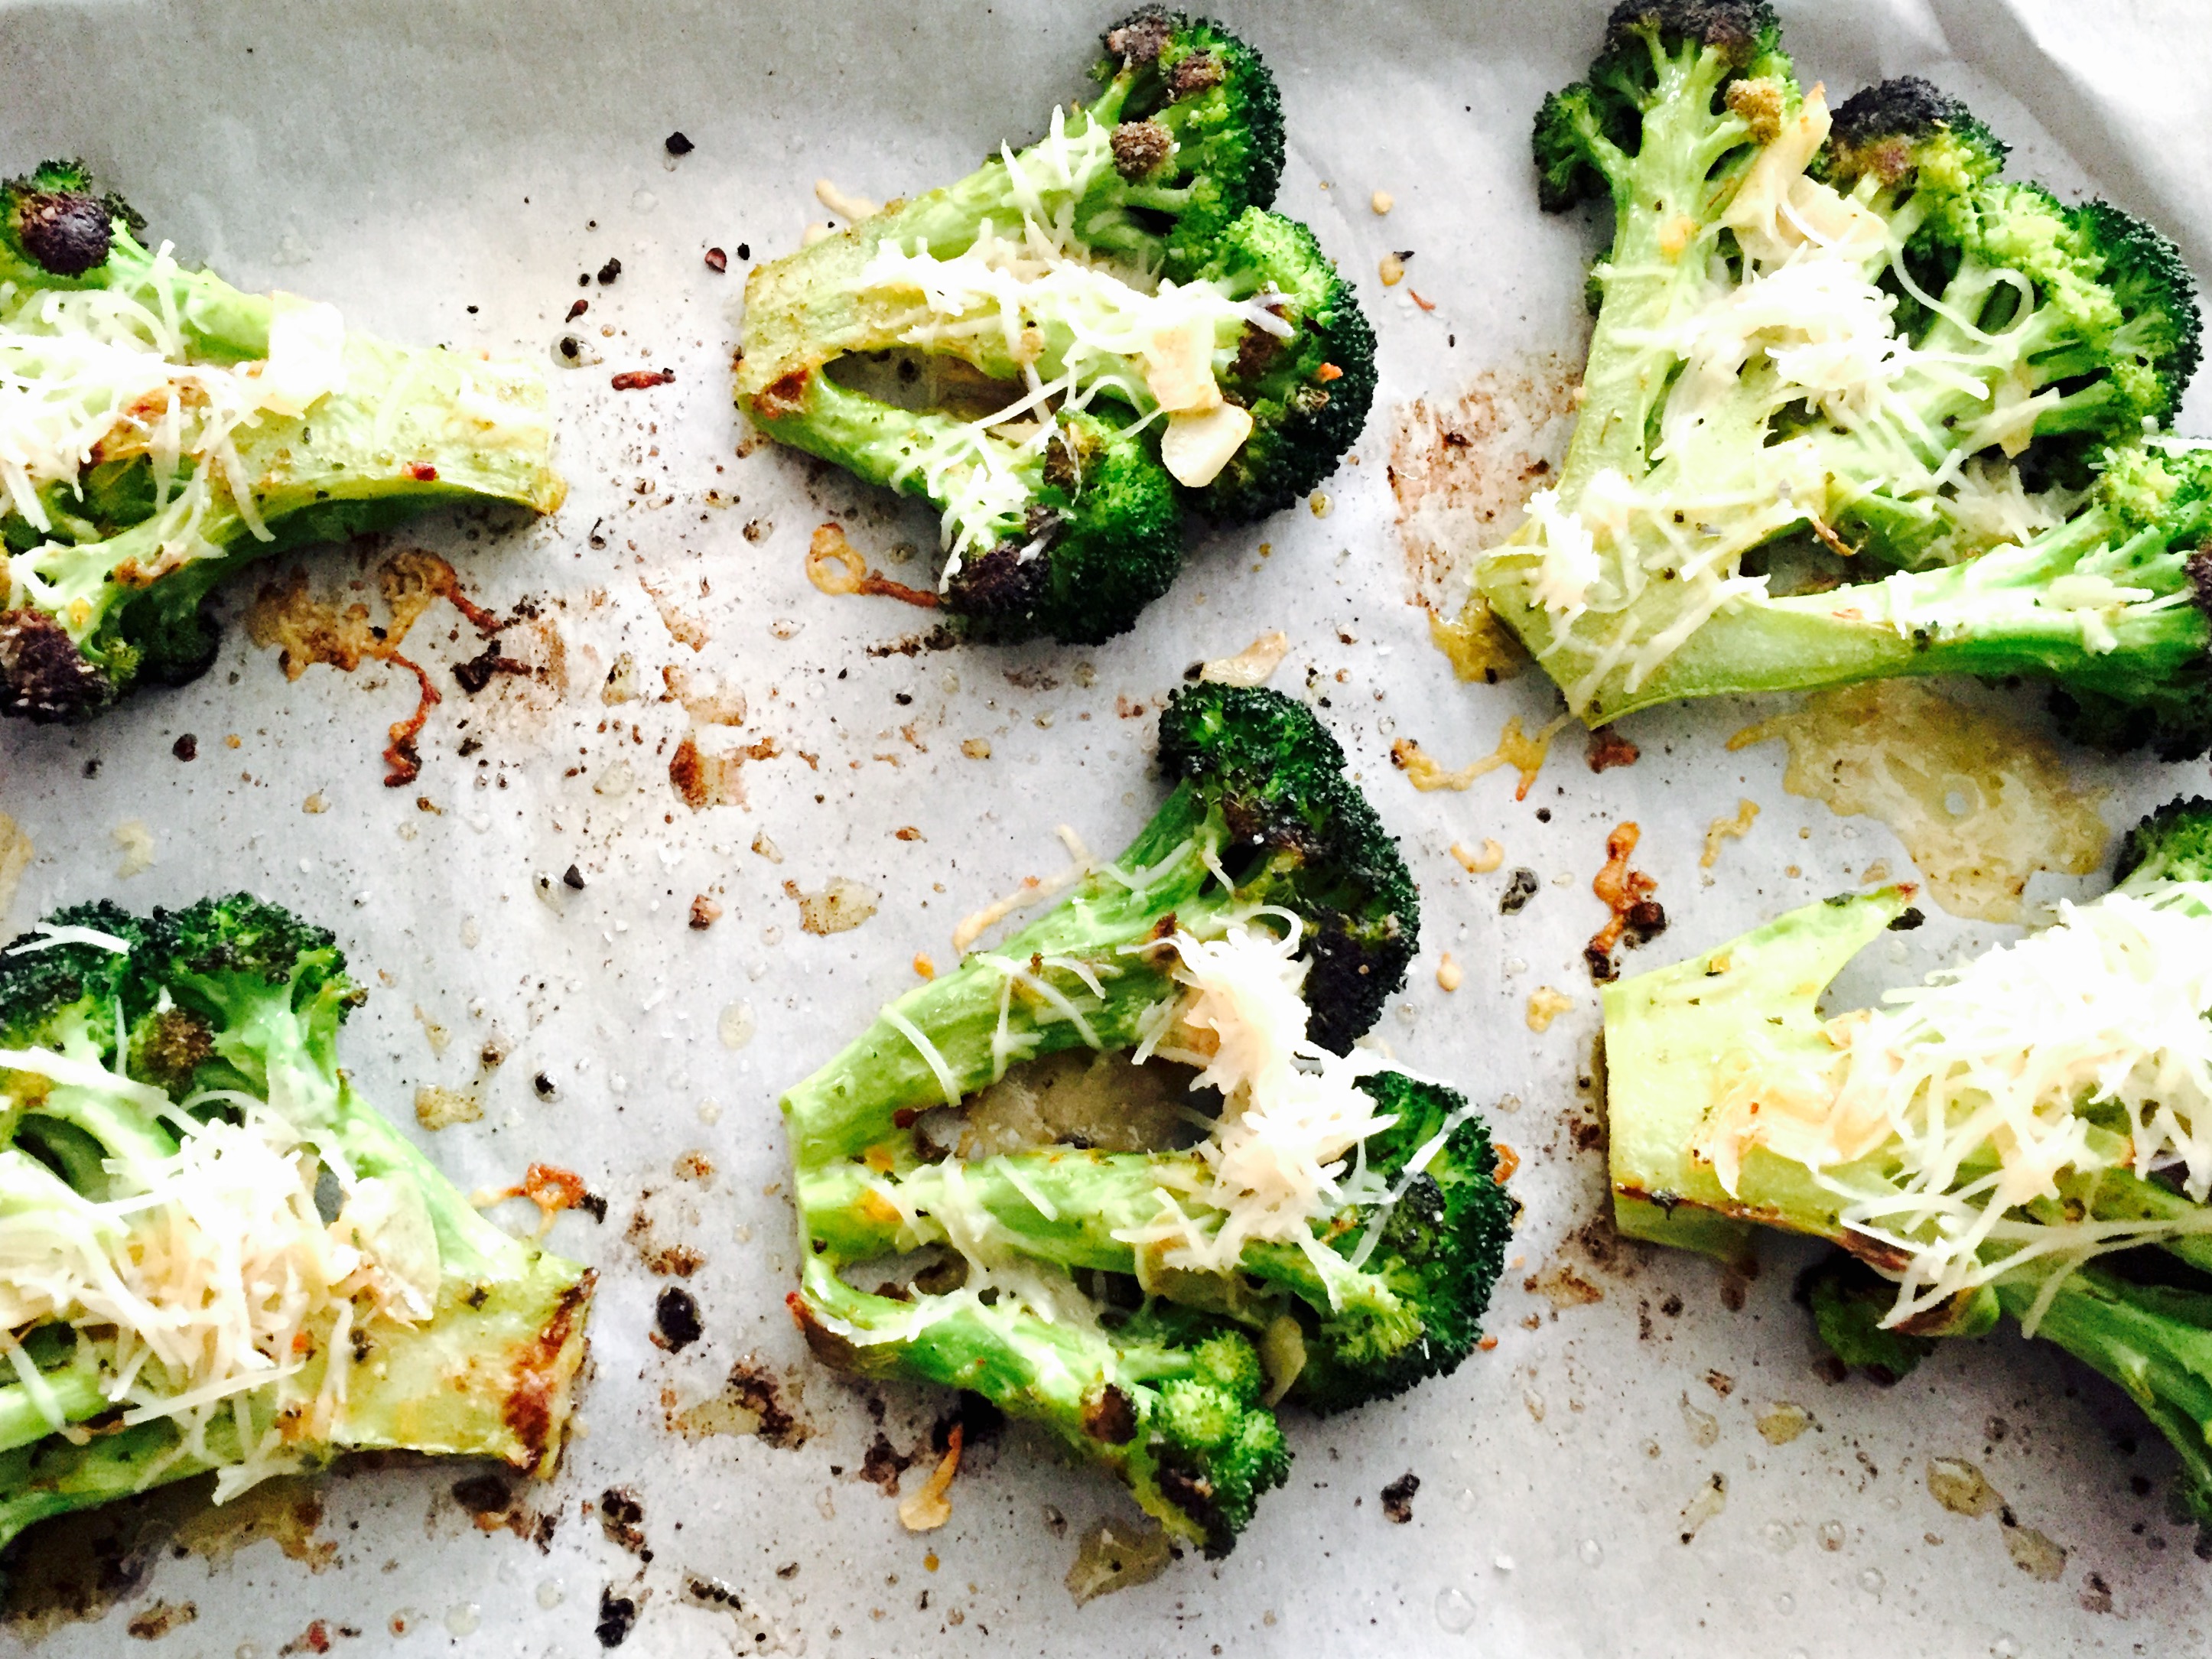 One of my new favourite ways to enjoy broccoli